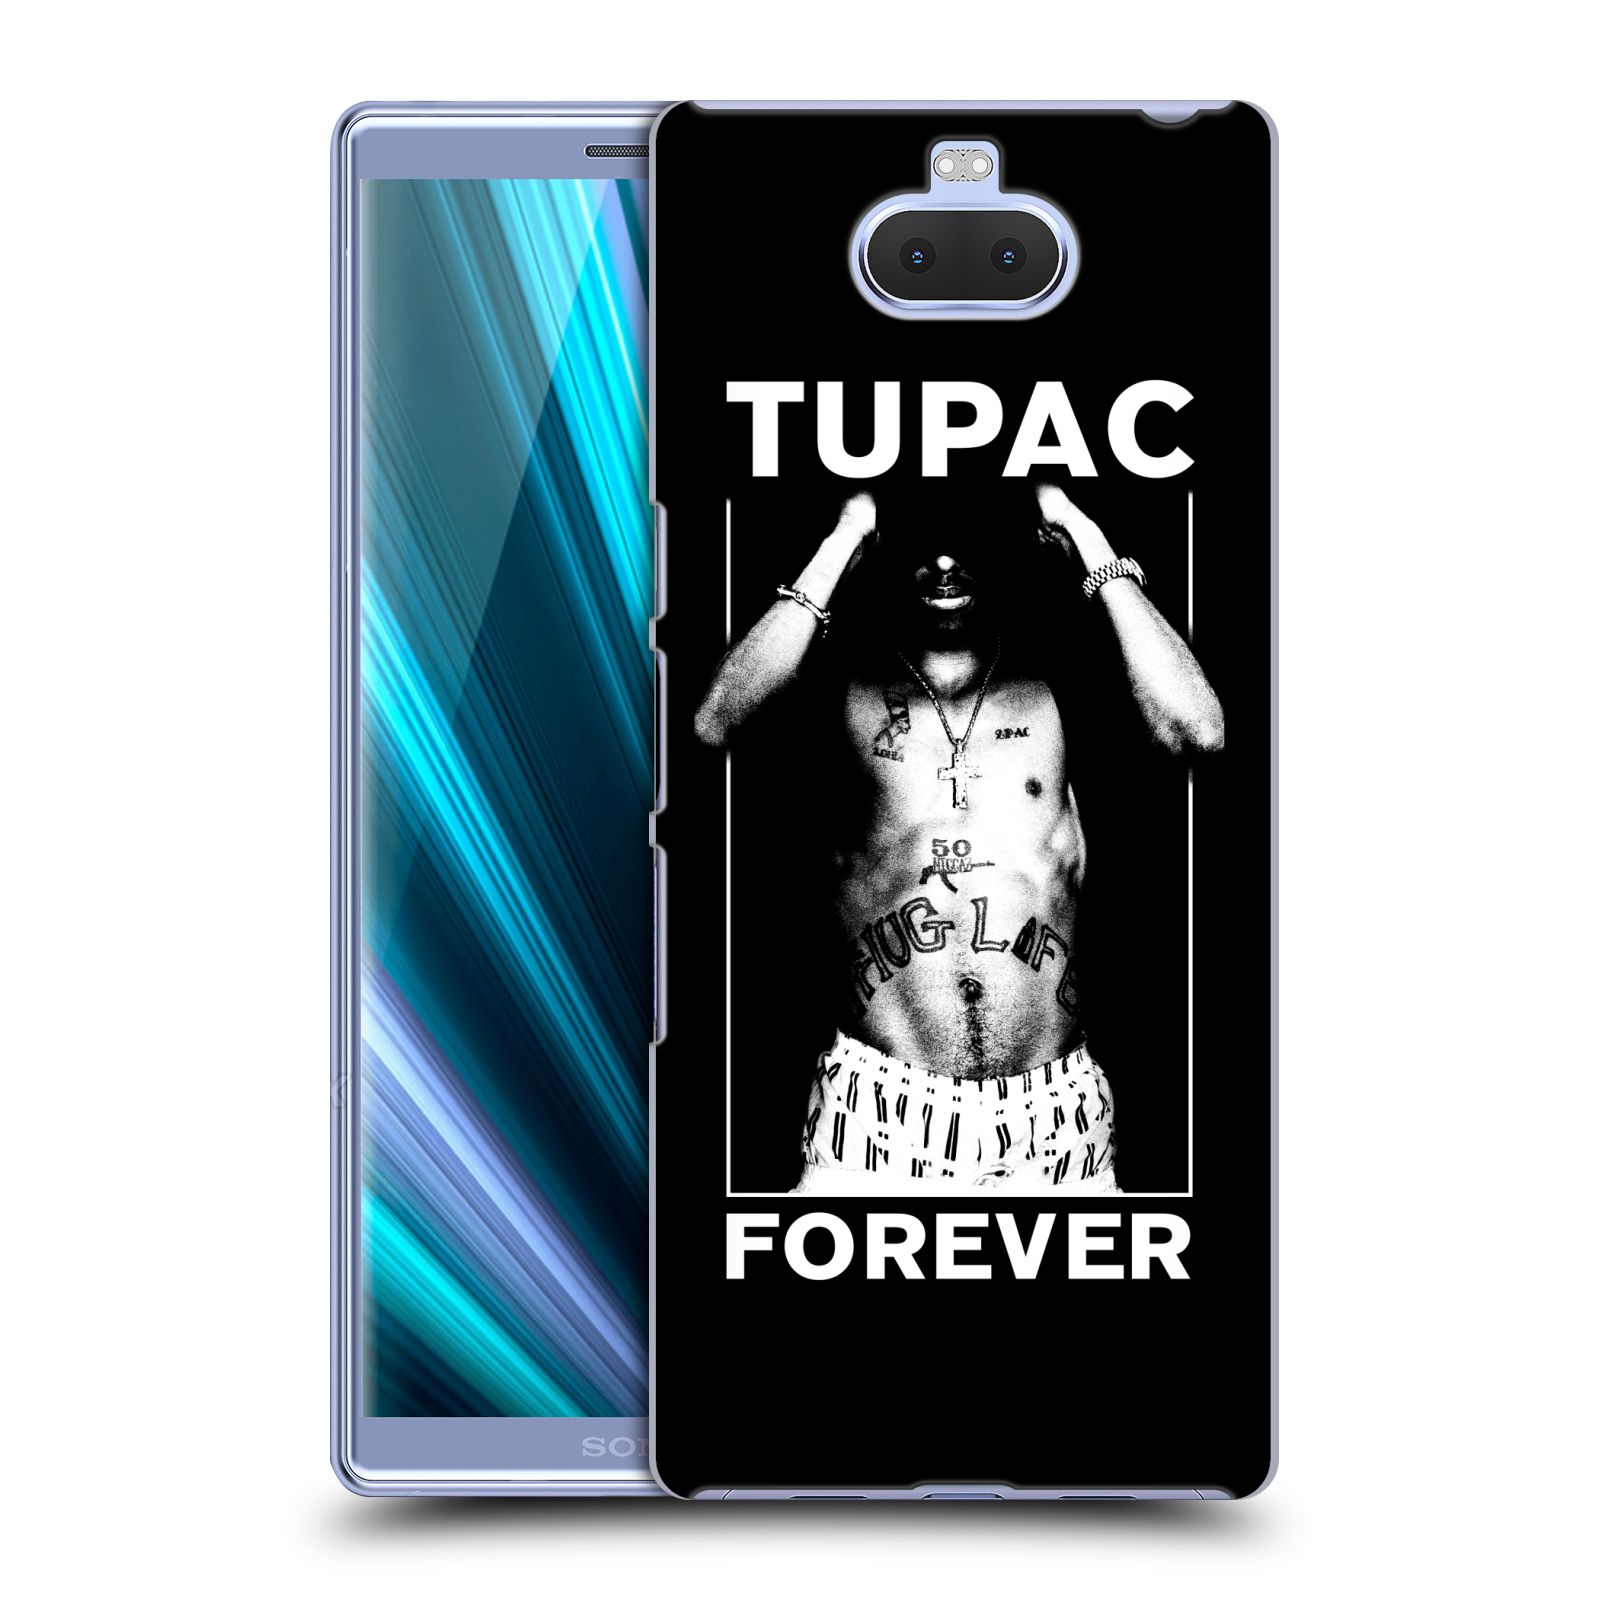 Pouzdro na mobil Sony Xperia 10 - Head Case - Zpěvák rapper Tupac Shakur 2Pac bílý popisek FOREVER